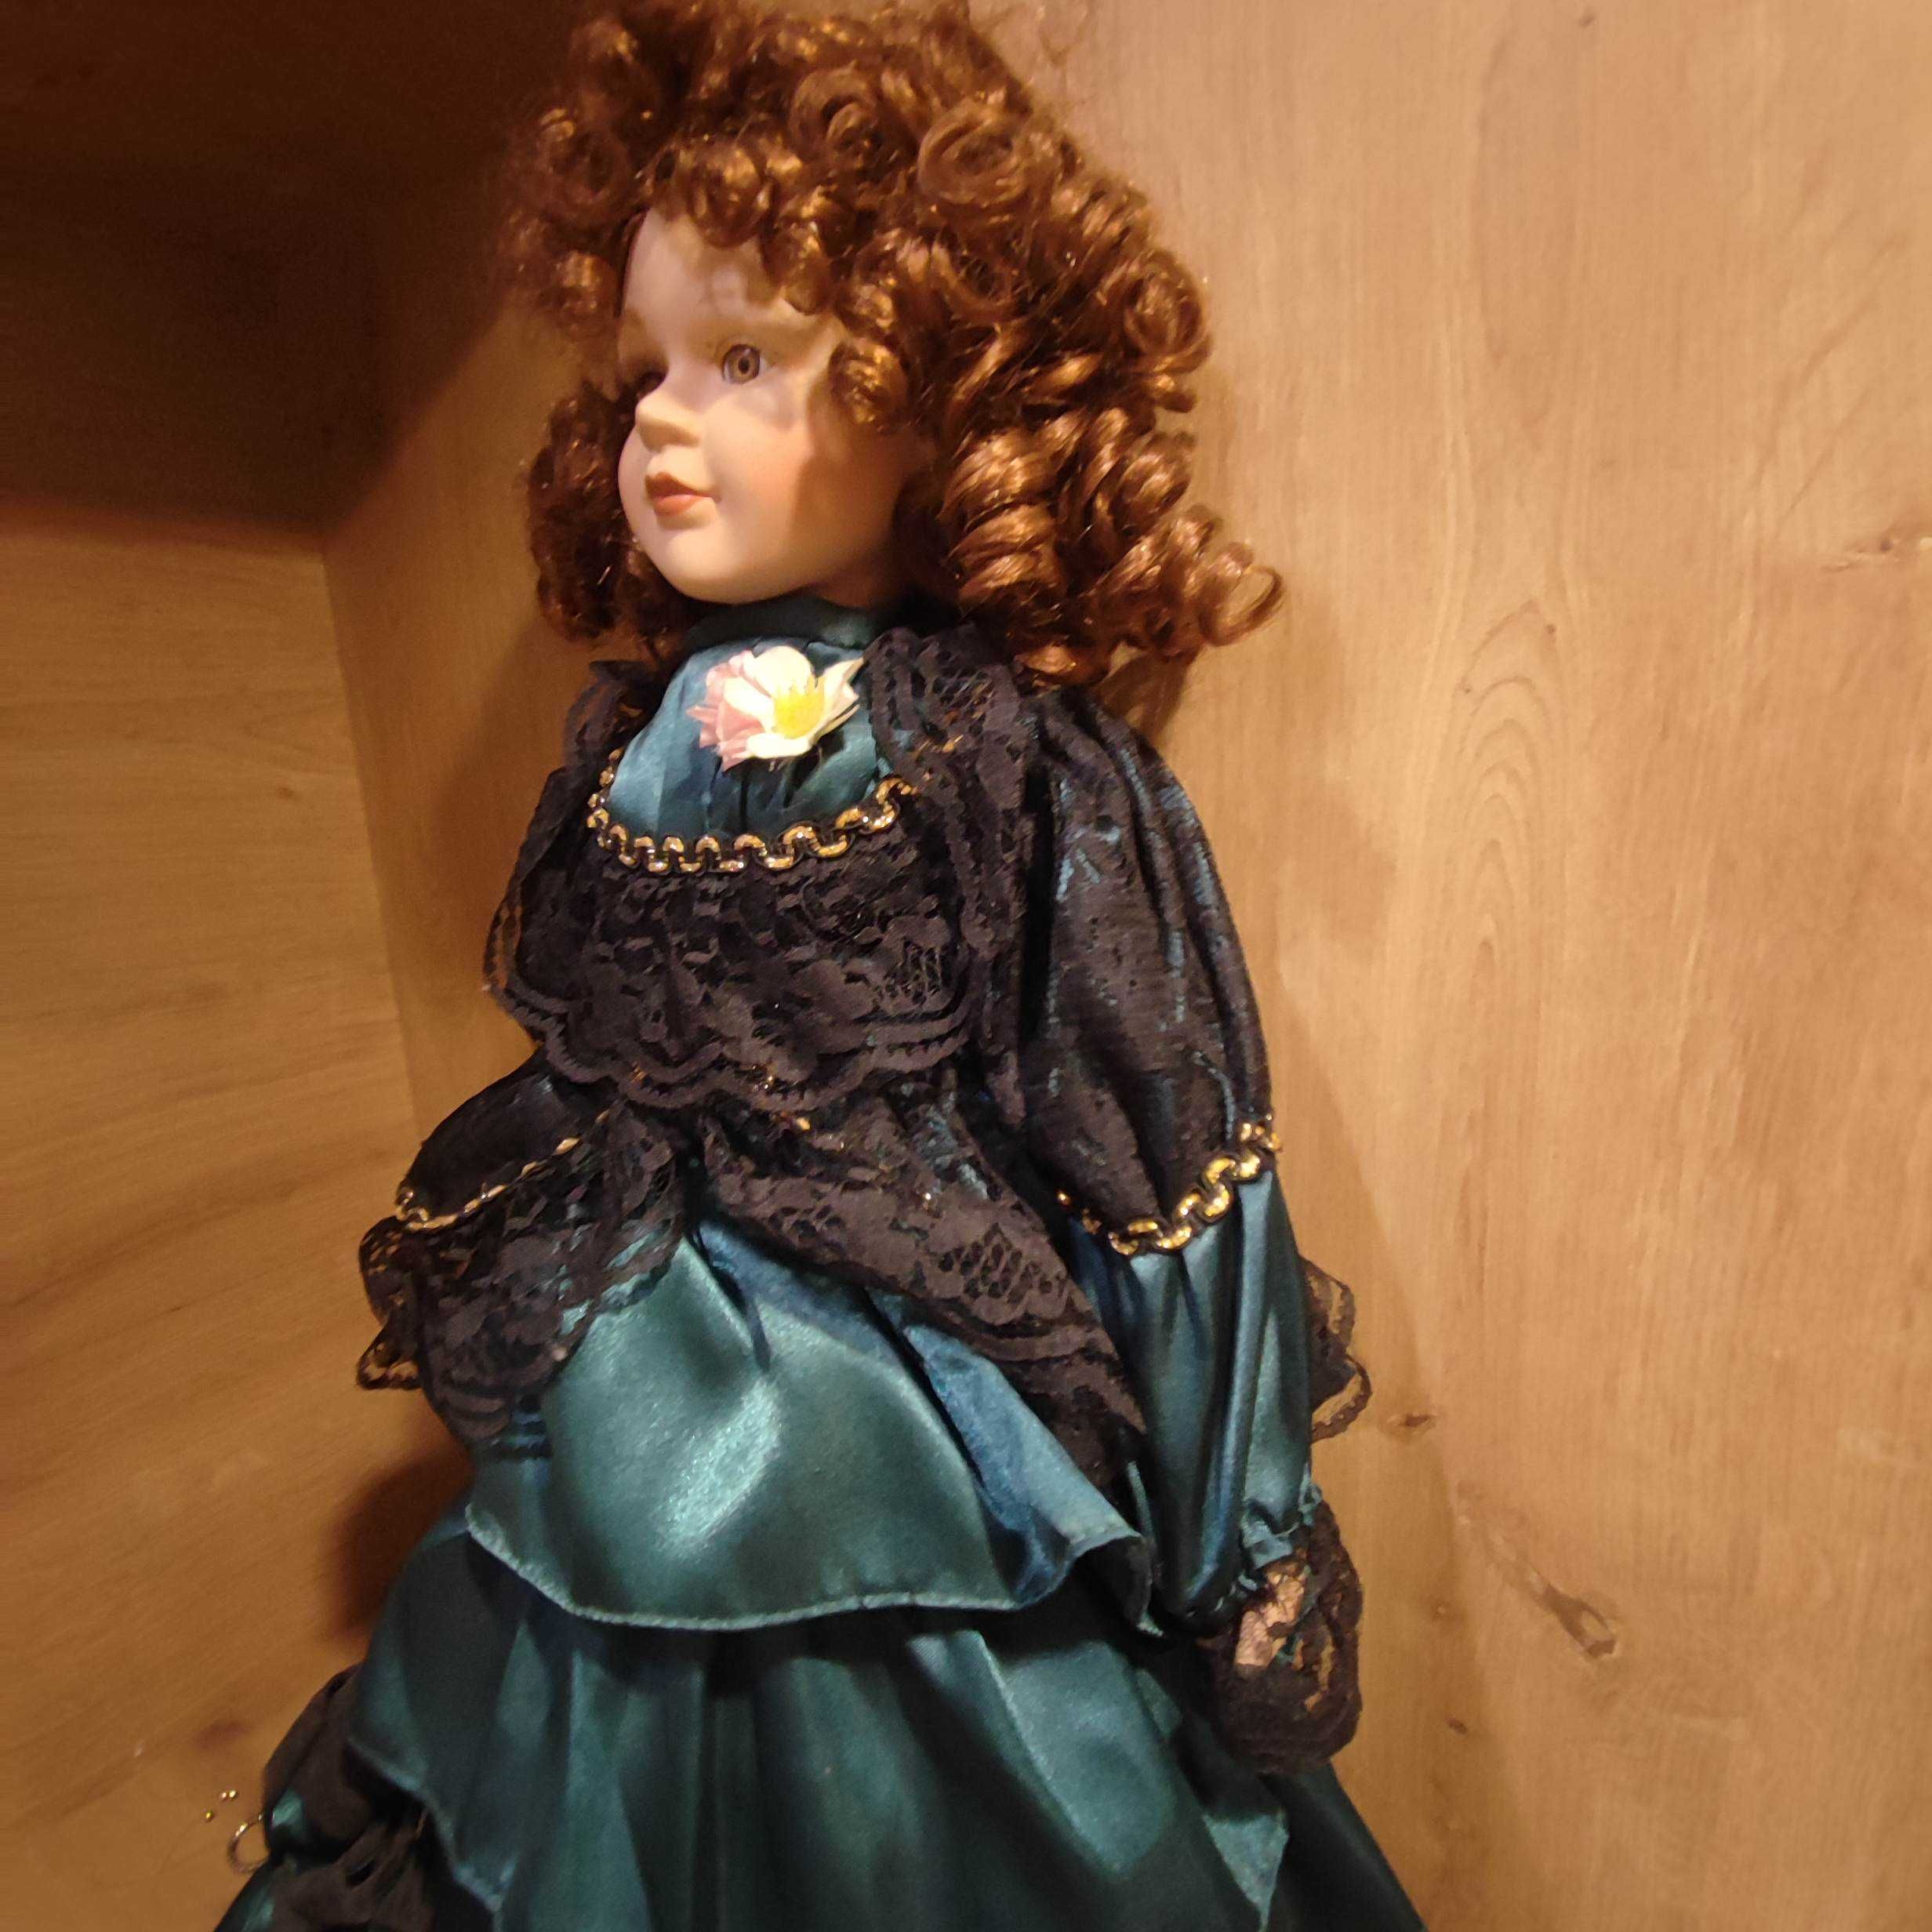 DUŻA RZADKA  Lalka kolekcjonerska  (collectible porcelain doll)